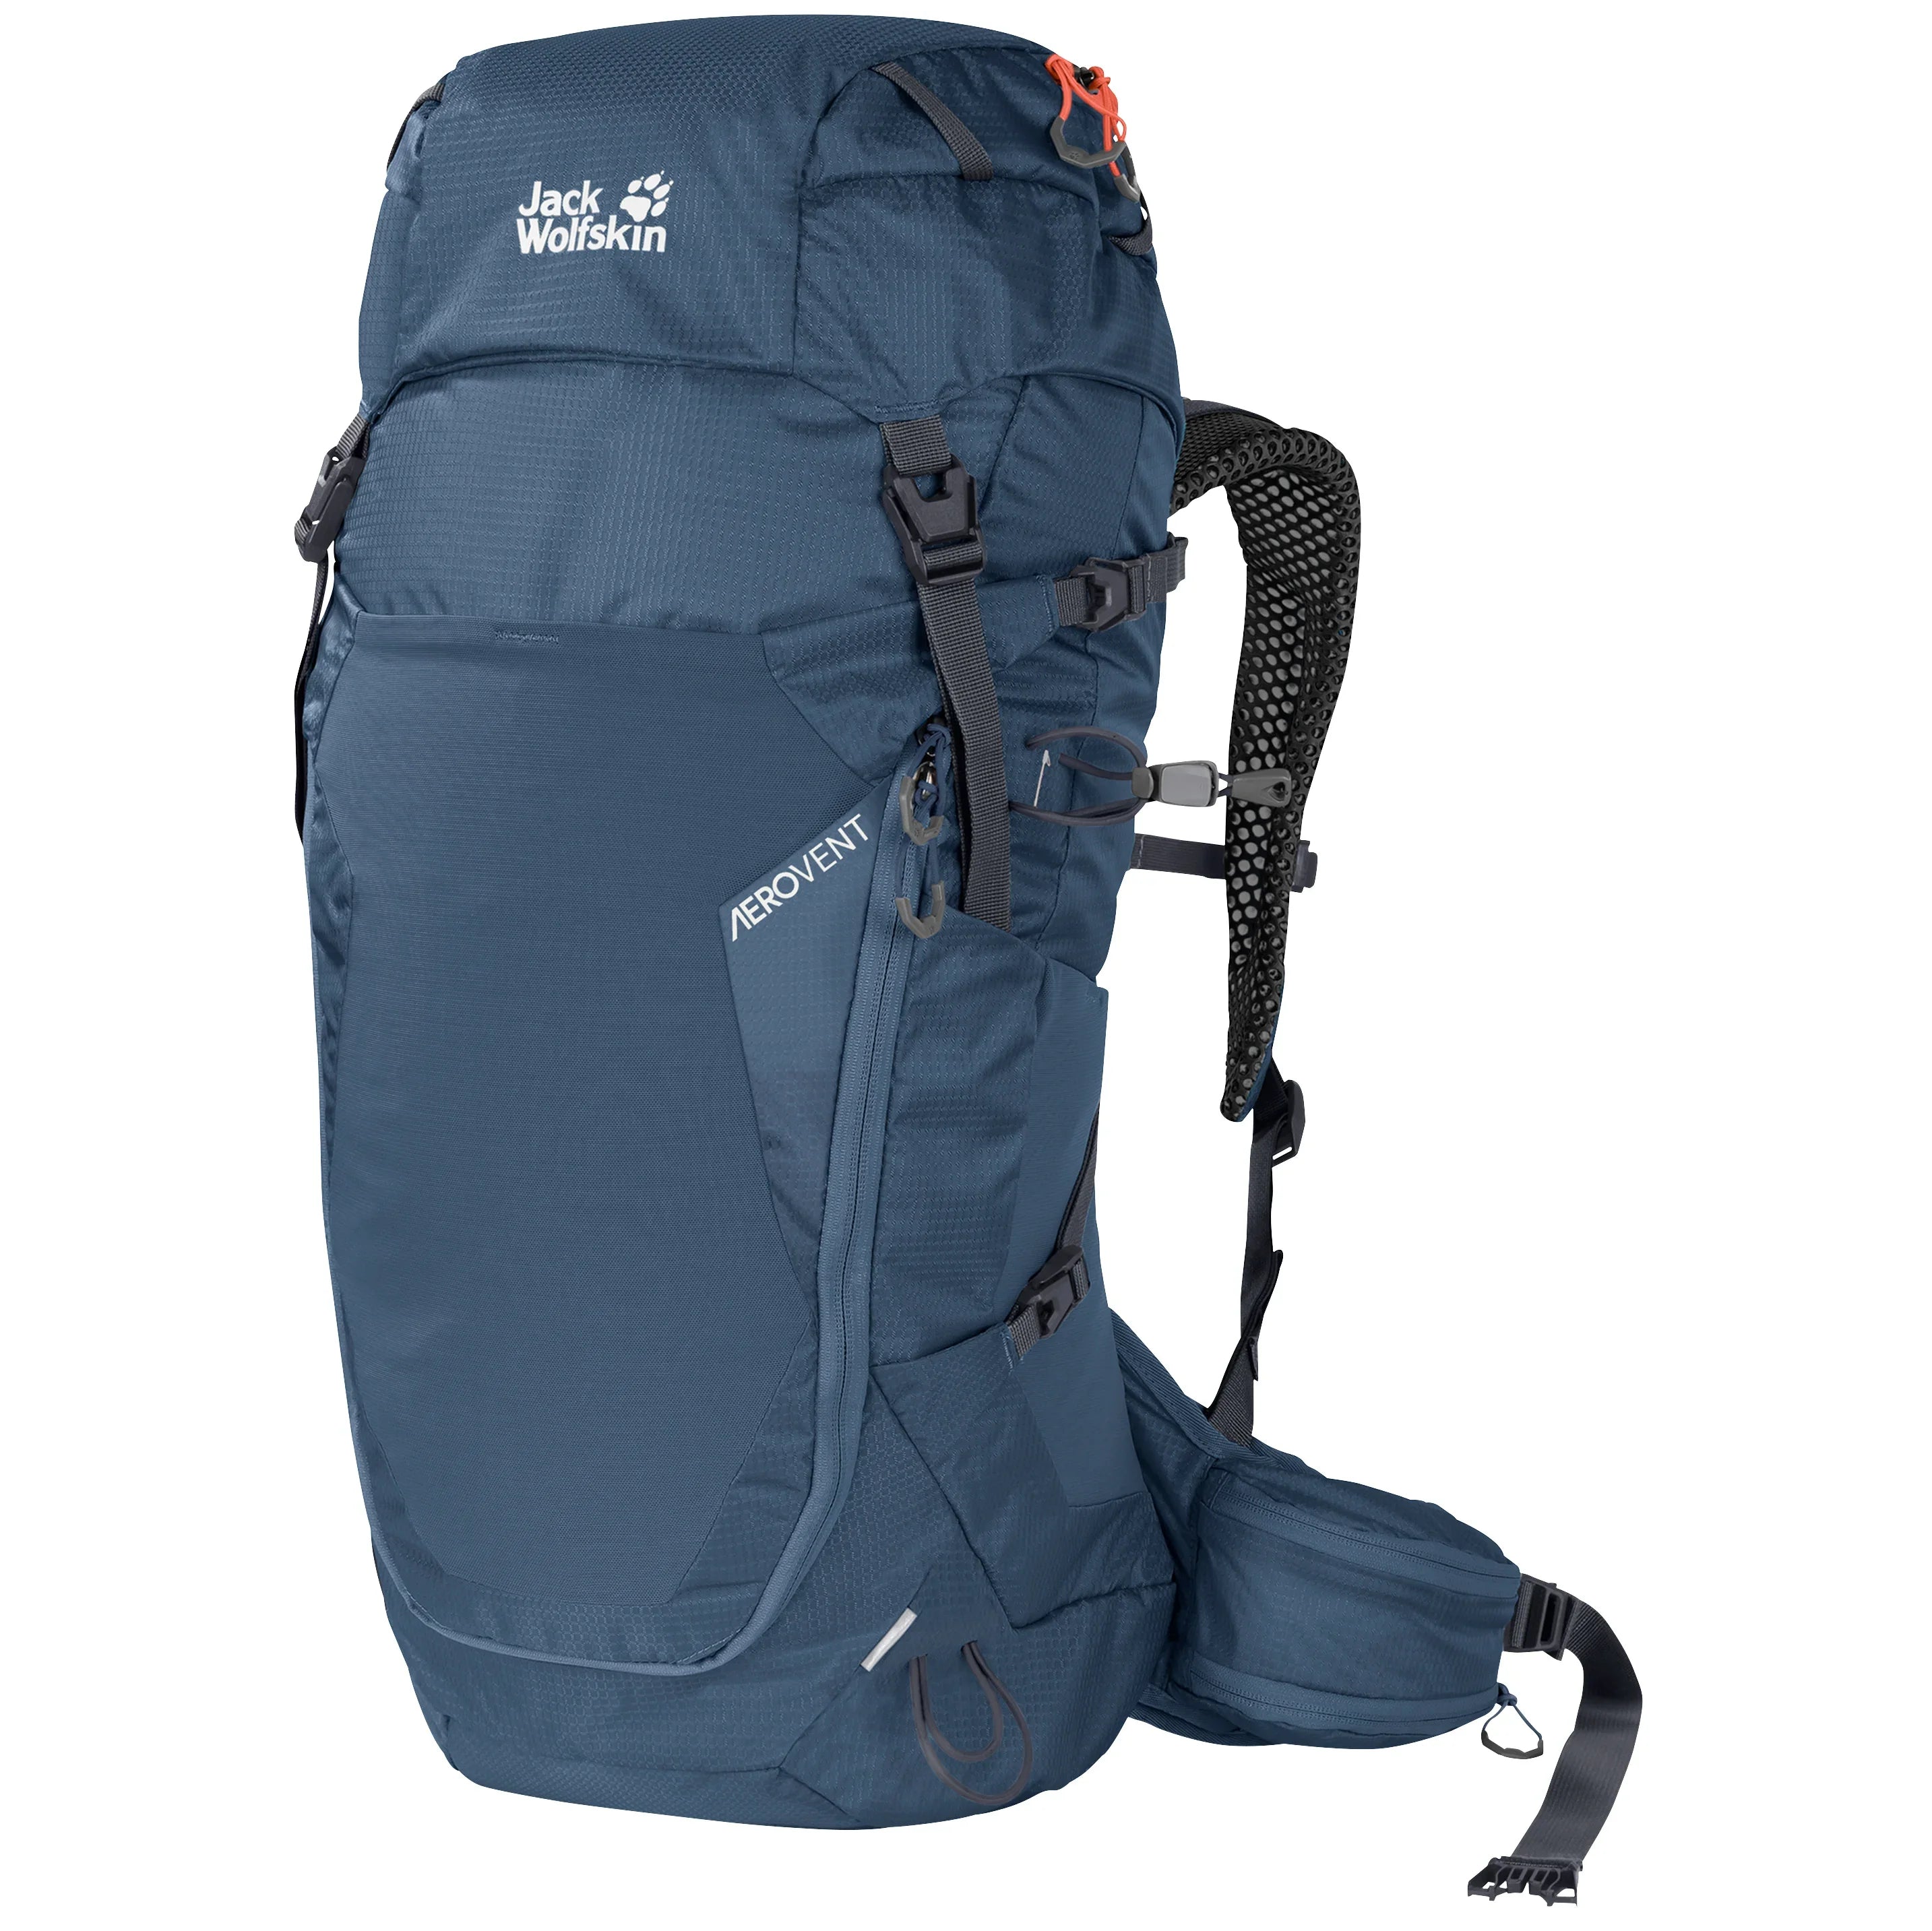 Jack Wolfskin Outdoor Crosstrail 30 ST hiking backpack 62 cm - thunder blue